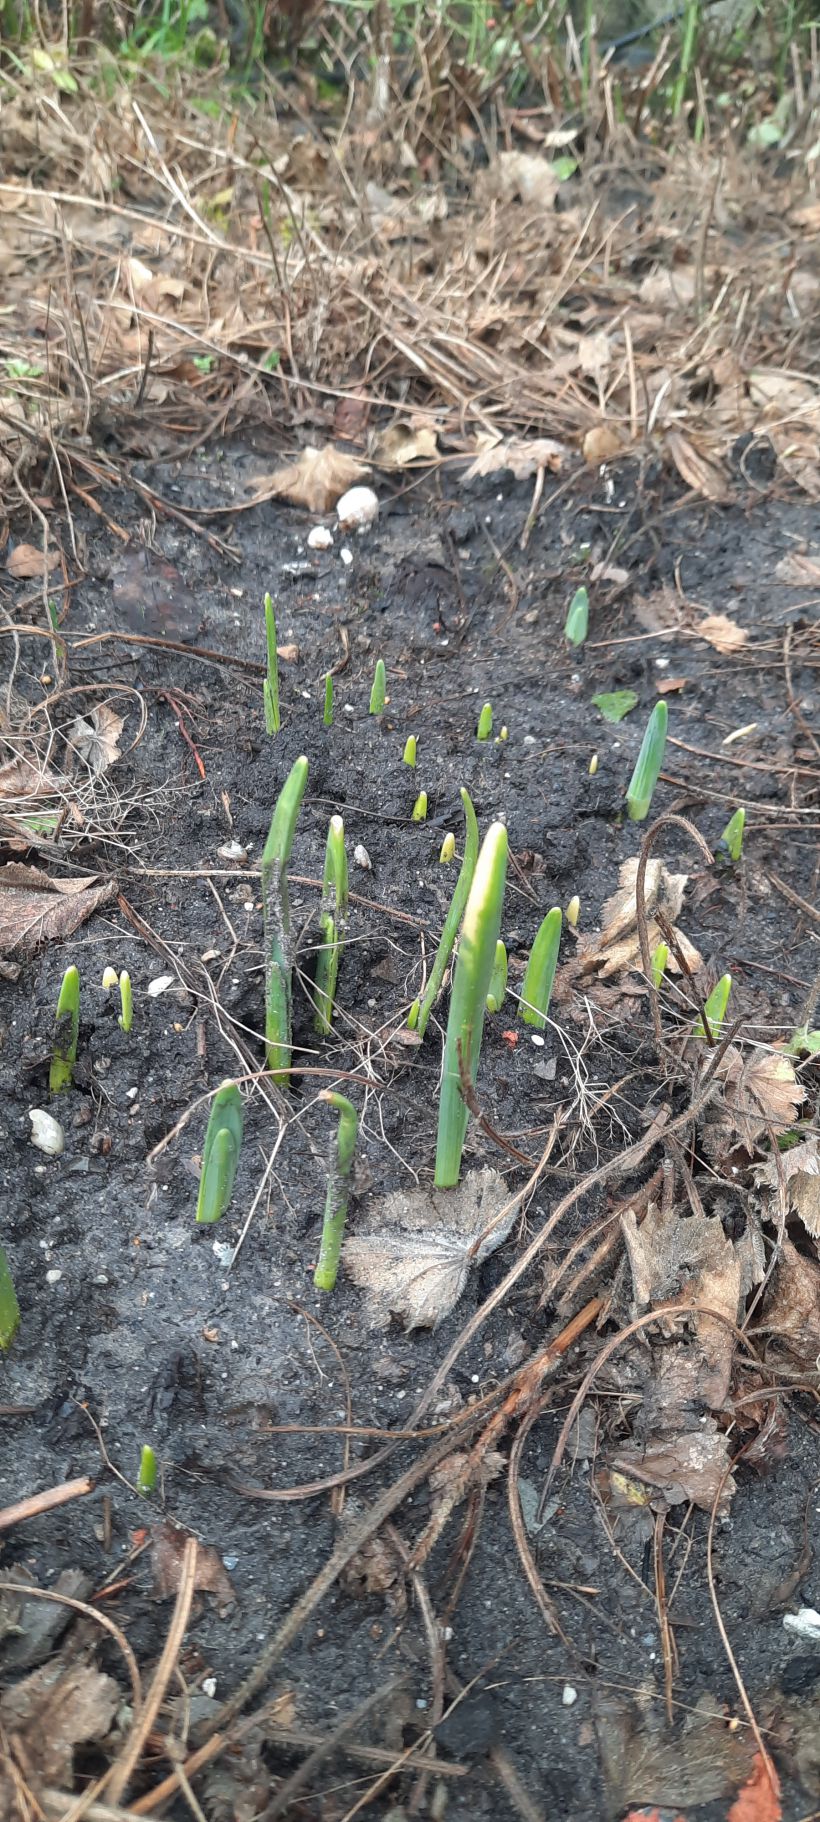 De lente schiet de grond uit